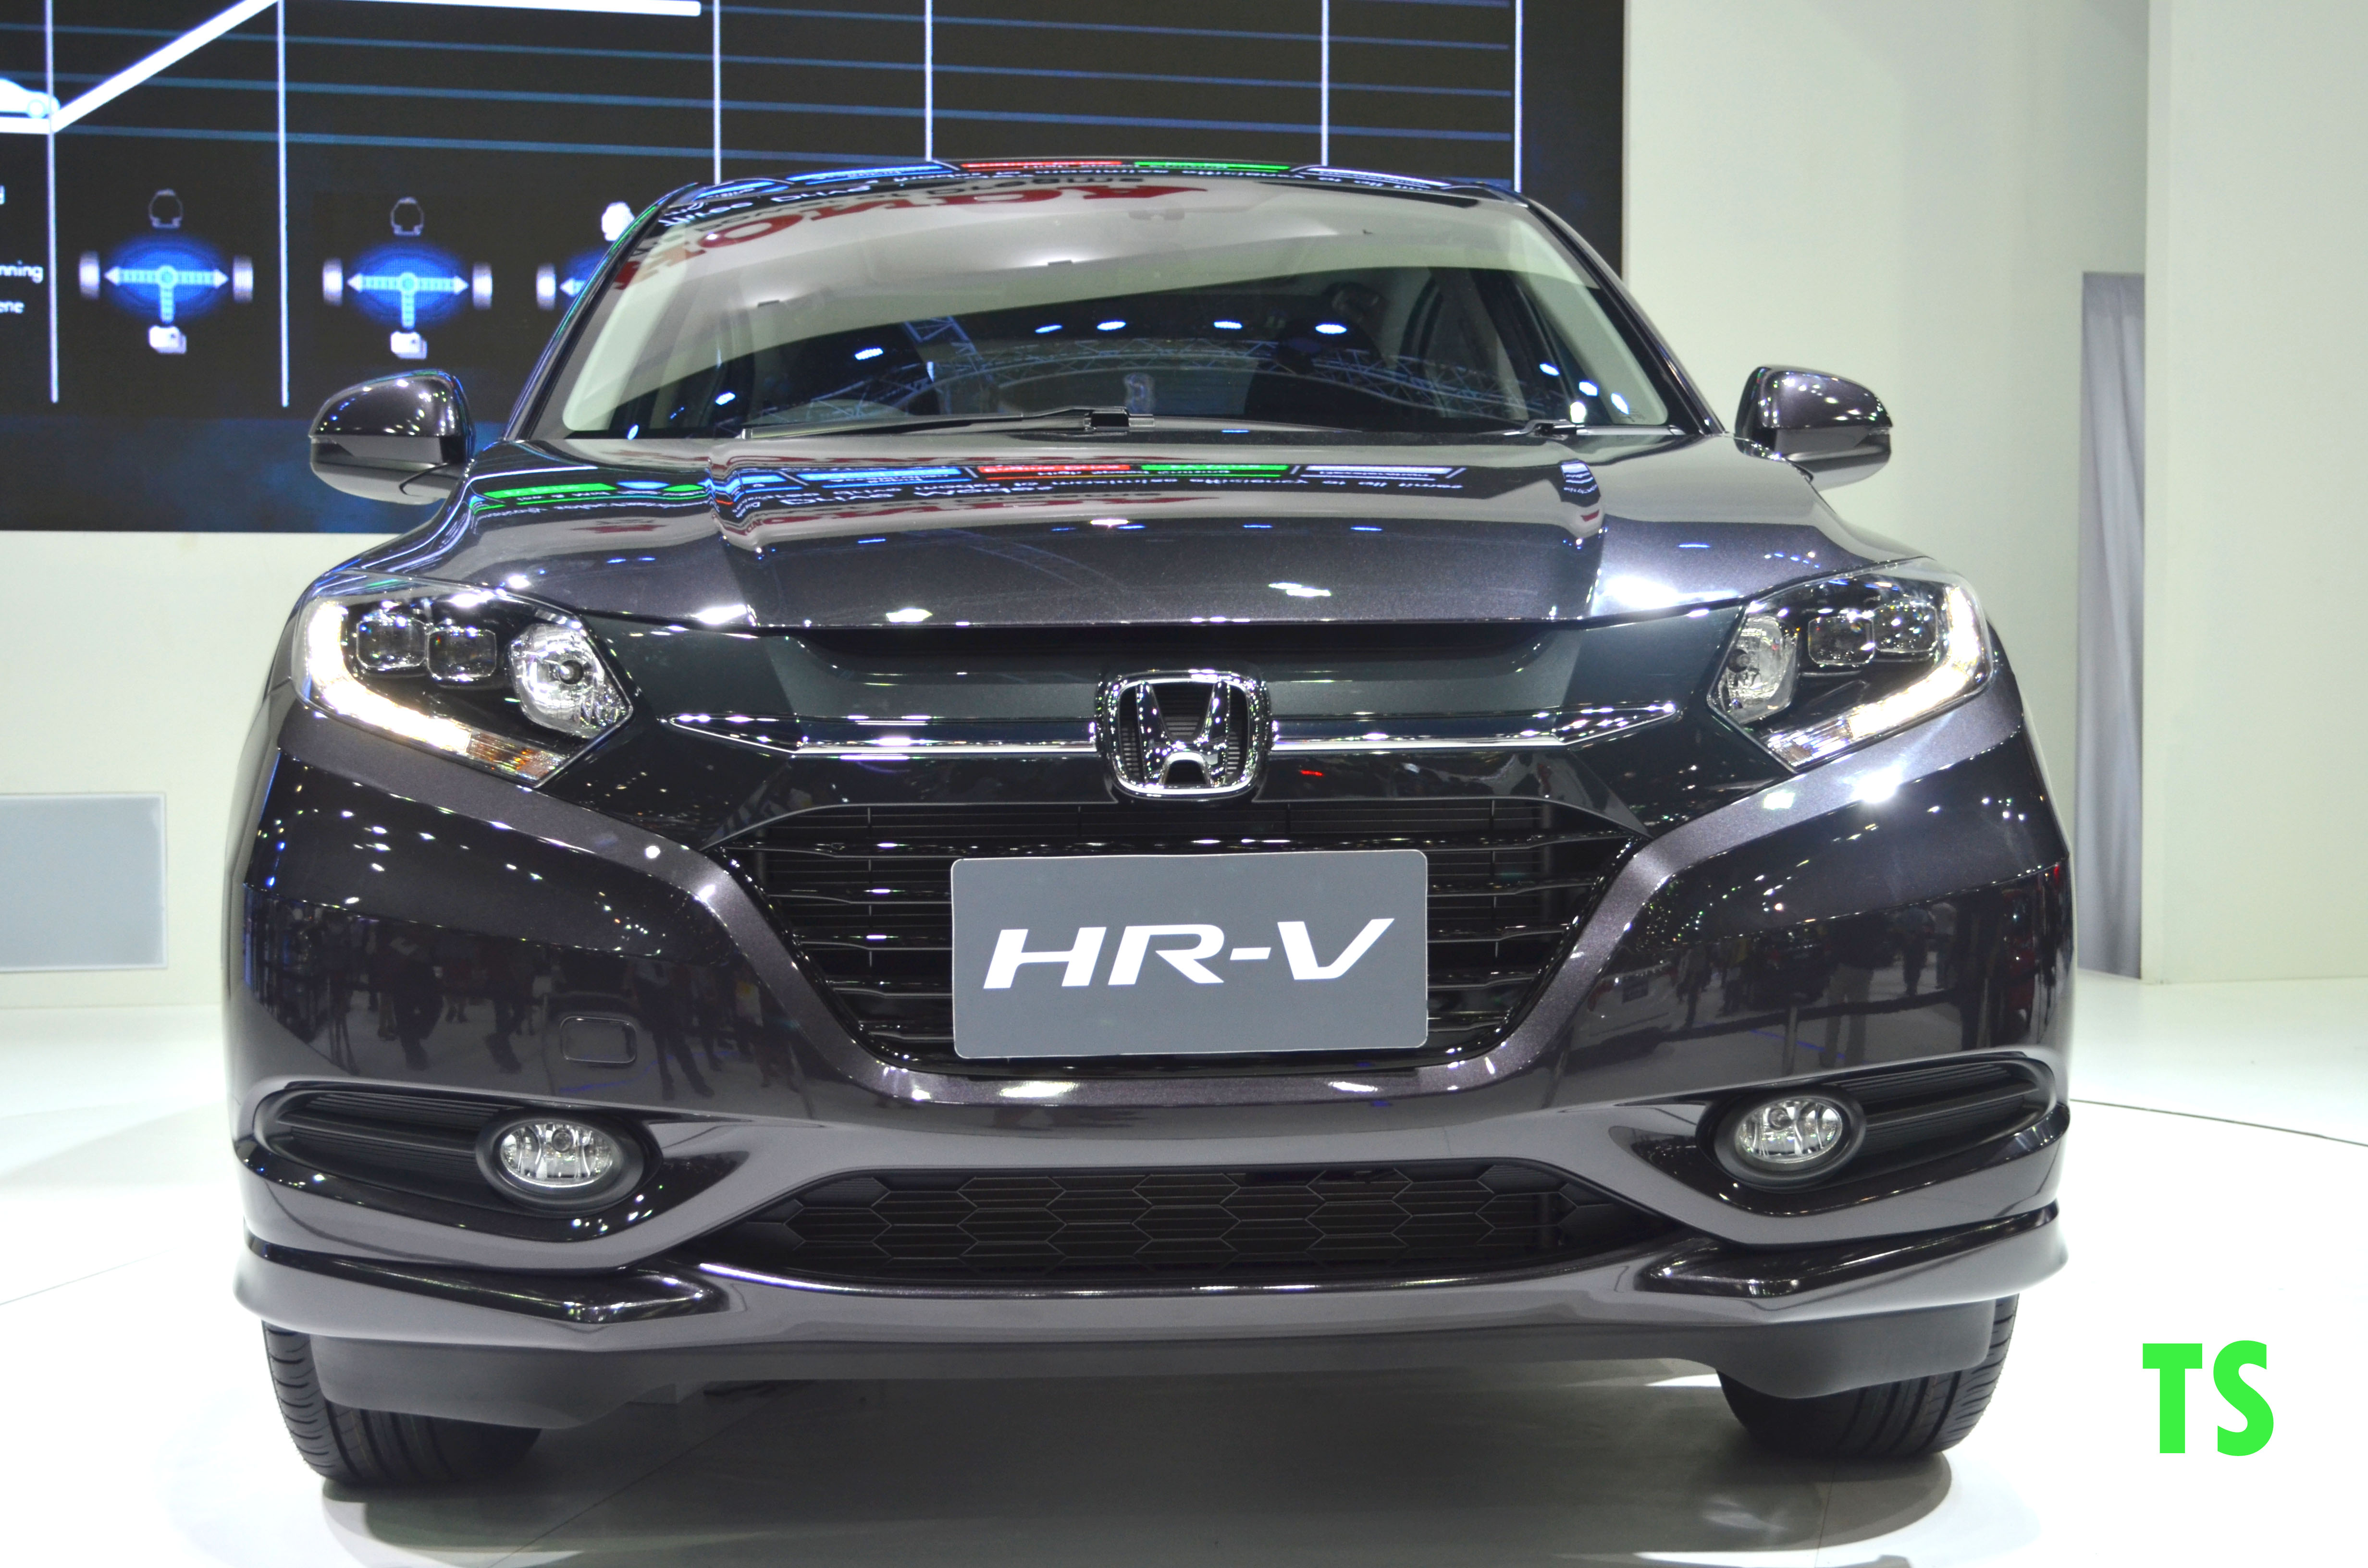 Honda HR-V hd 2018